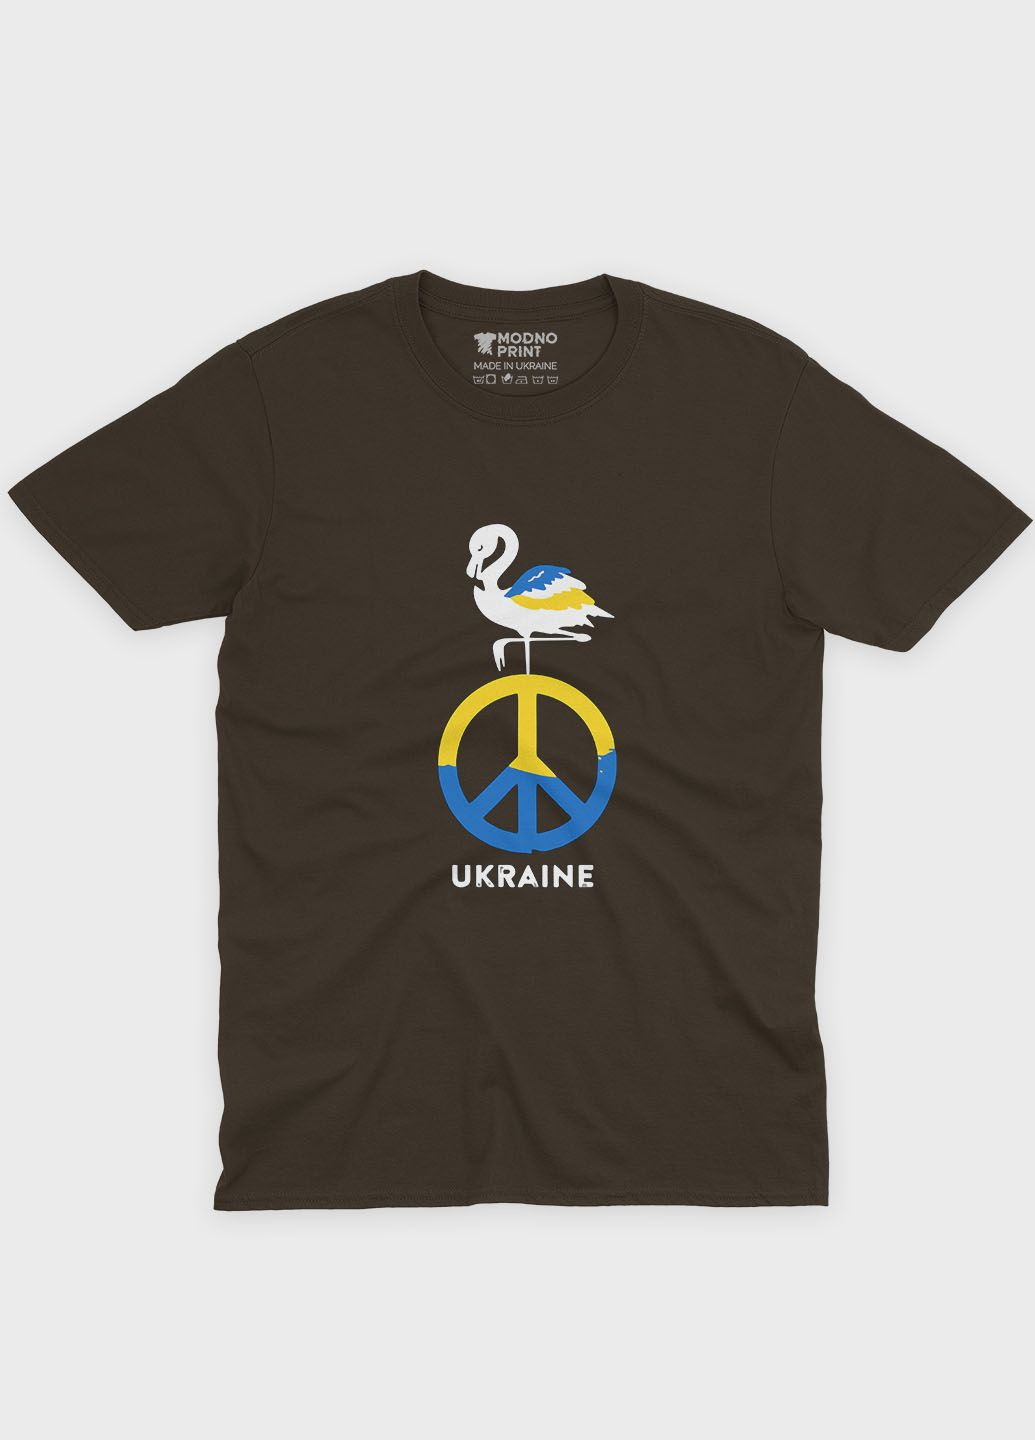 Коричневая летняя мужская футболка с патриотическим принтом ukraine (ts001-3-dch-005-1-075-f) Modno